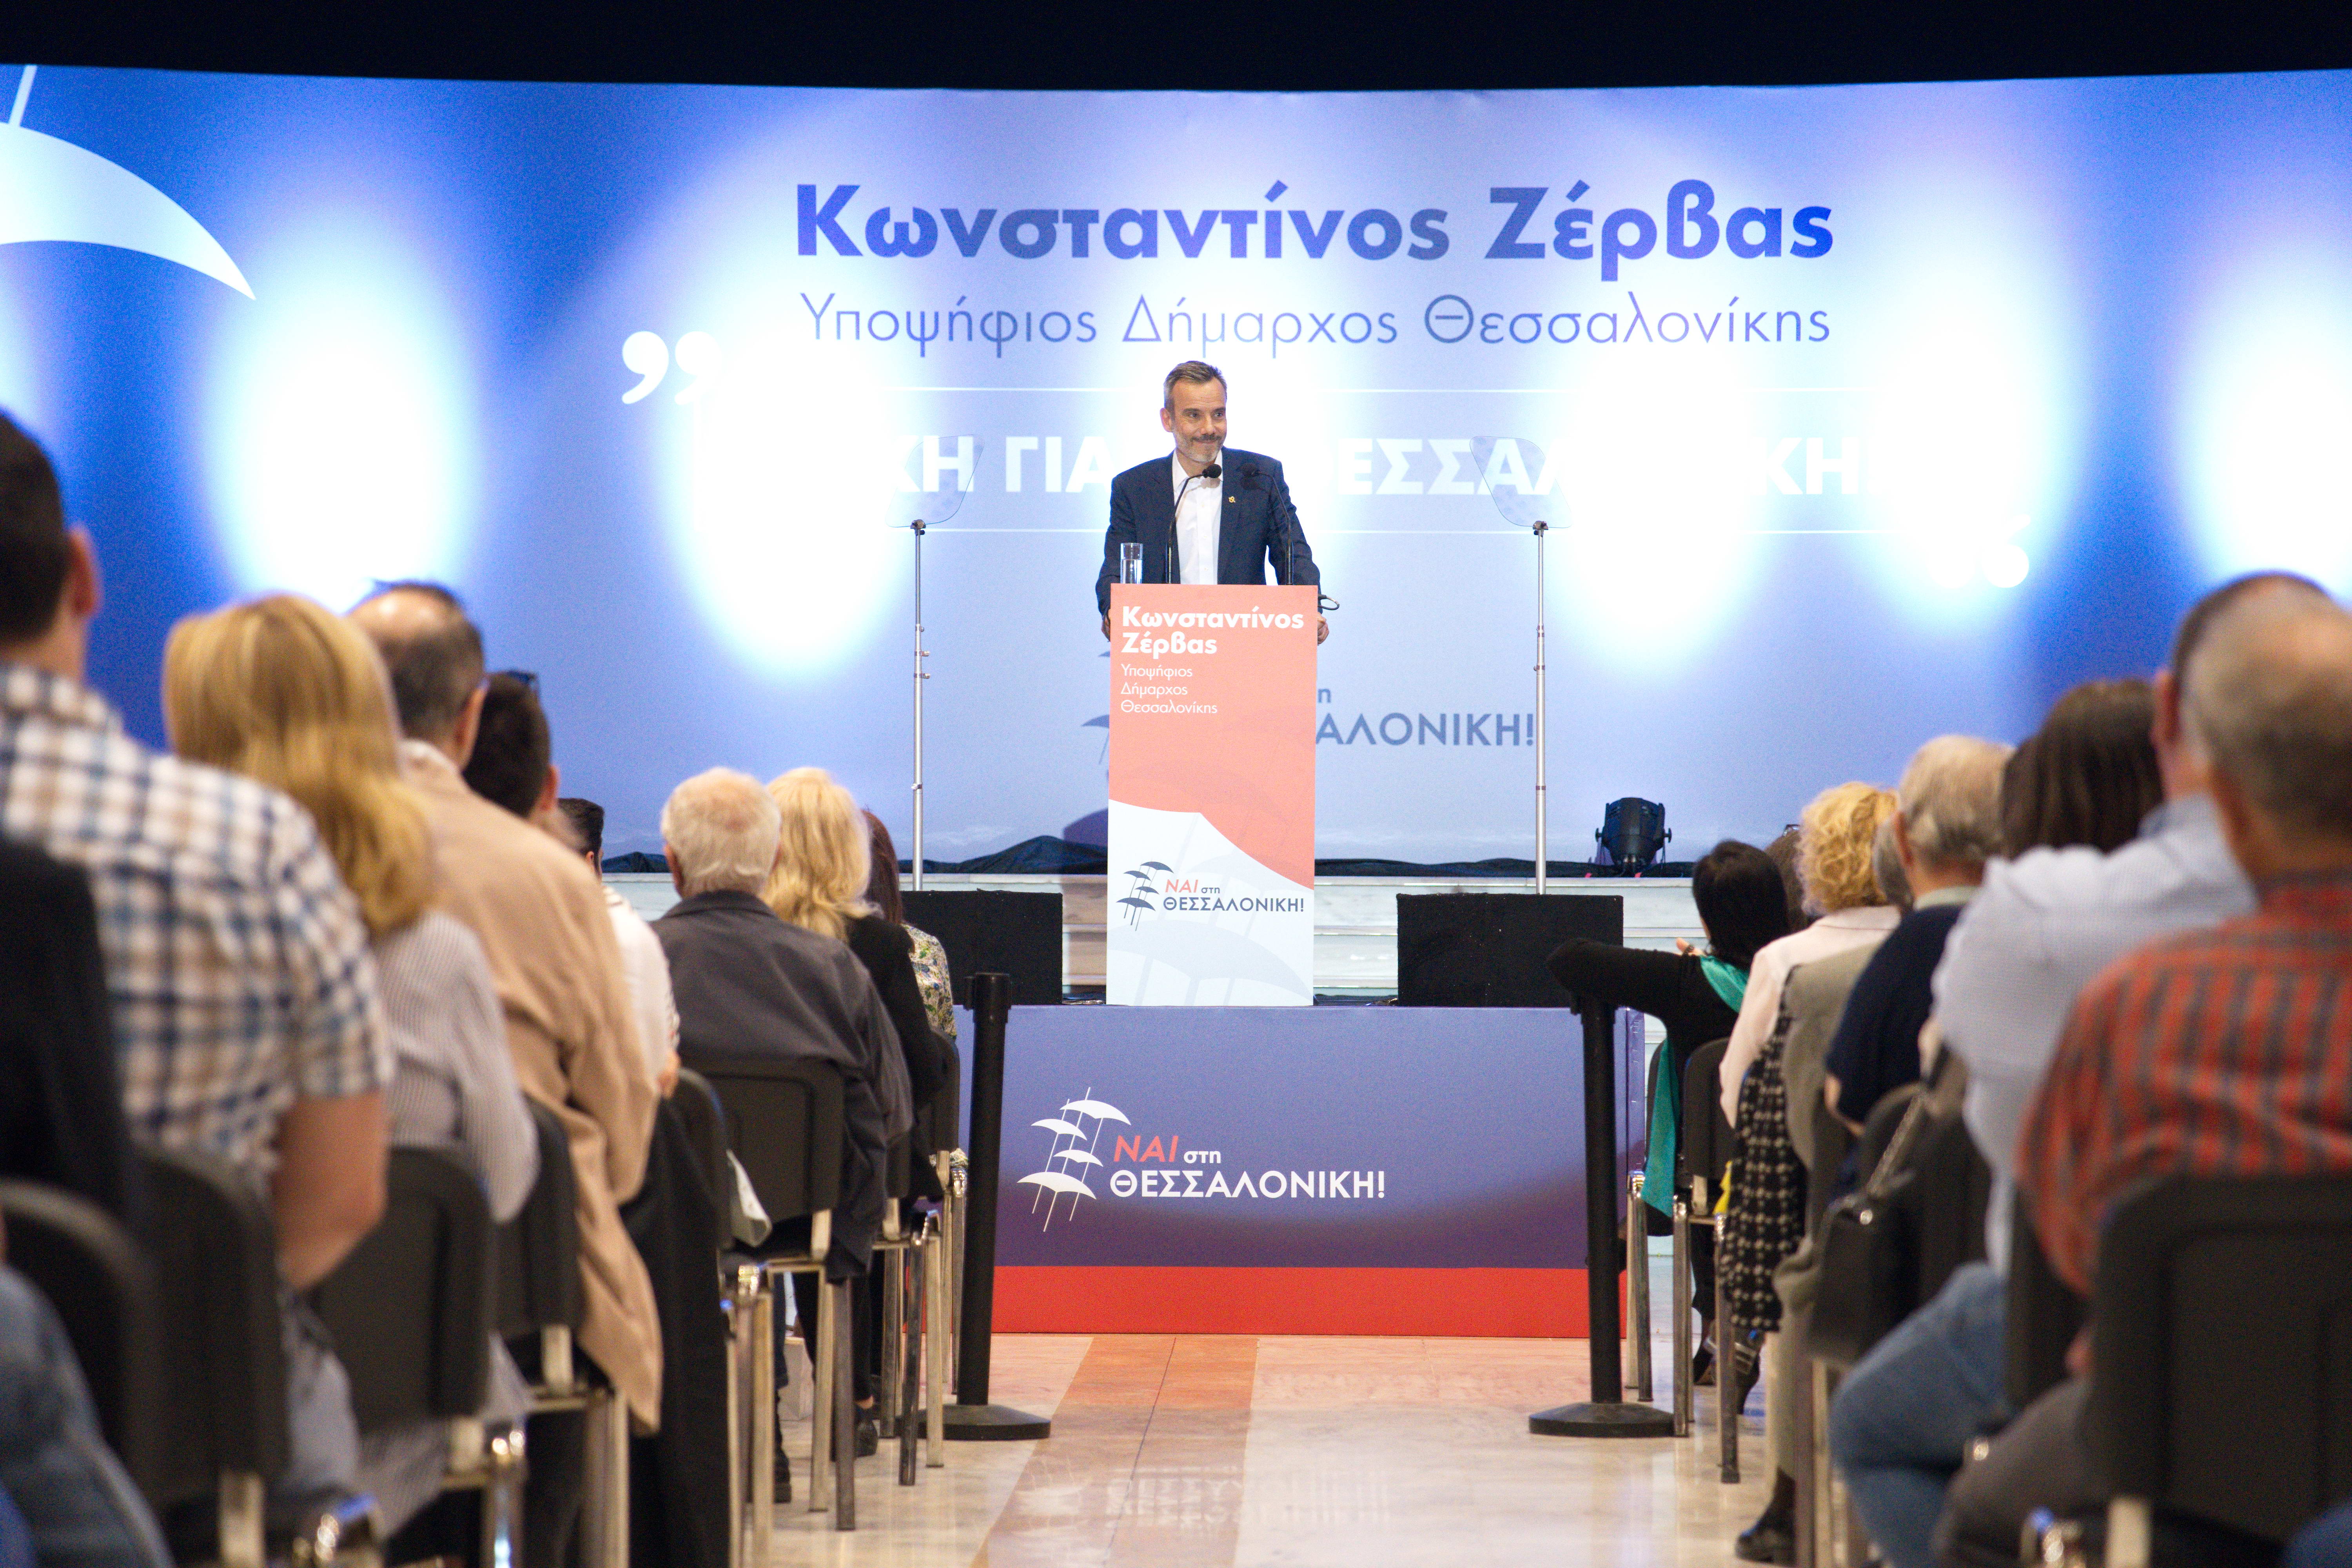 Η ομιλία του Κωνσταντίνου Ζέρβα στο Συνεδριακό Κέντρο «Ι. Βελλίδης» – Ναι στη Θεσσαλονίκη